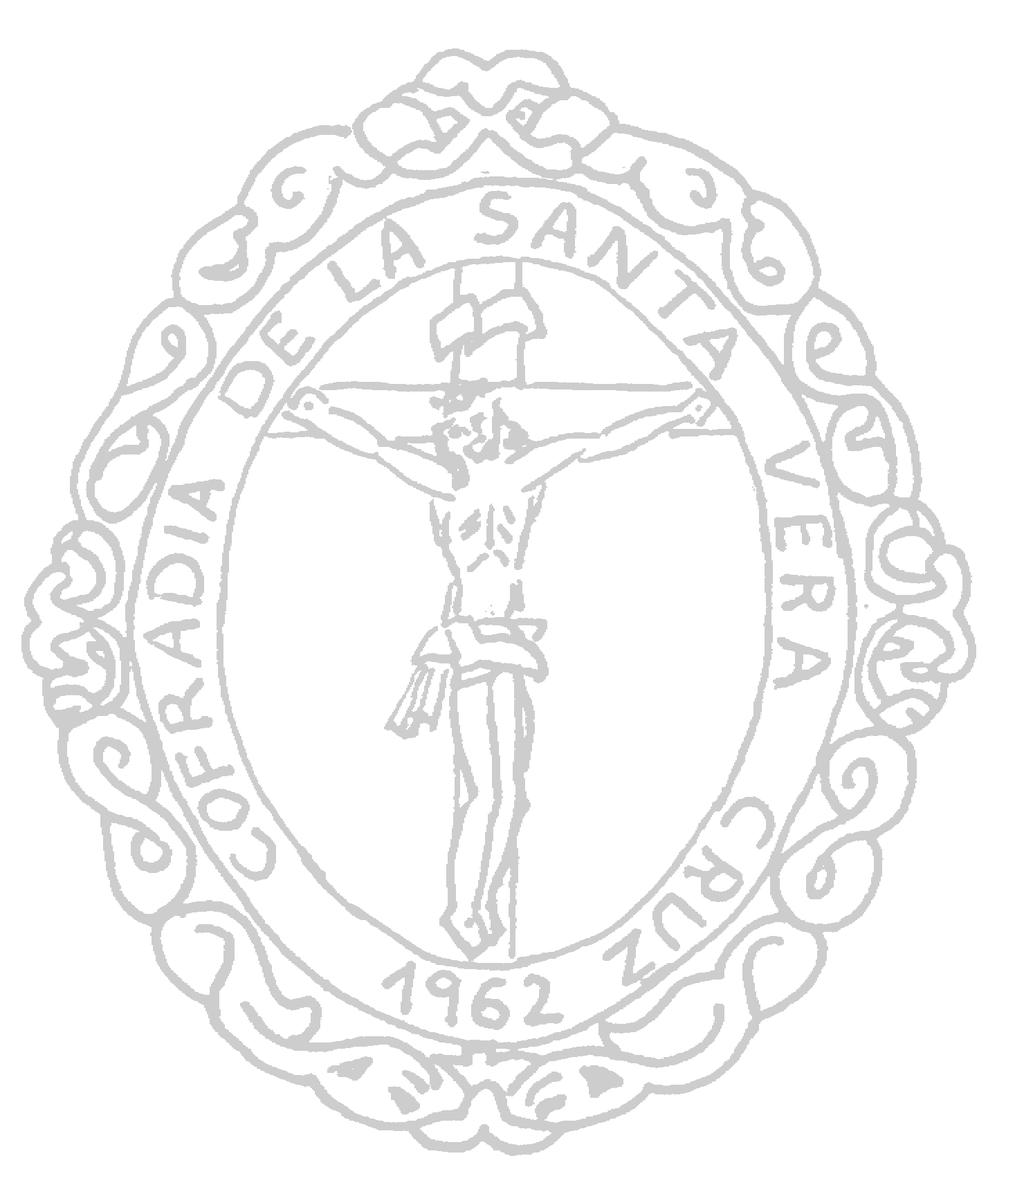 Organigrama de la Cofradía del Bendito Cristo de la Santa Vera Cruz de Benavides desde su refundación.